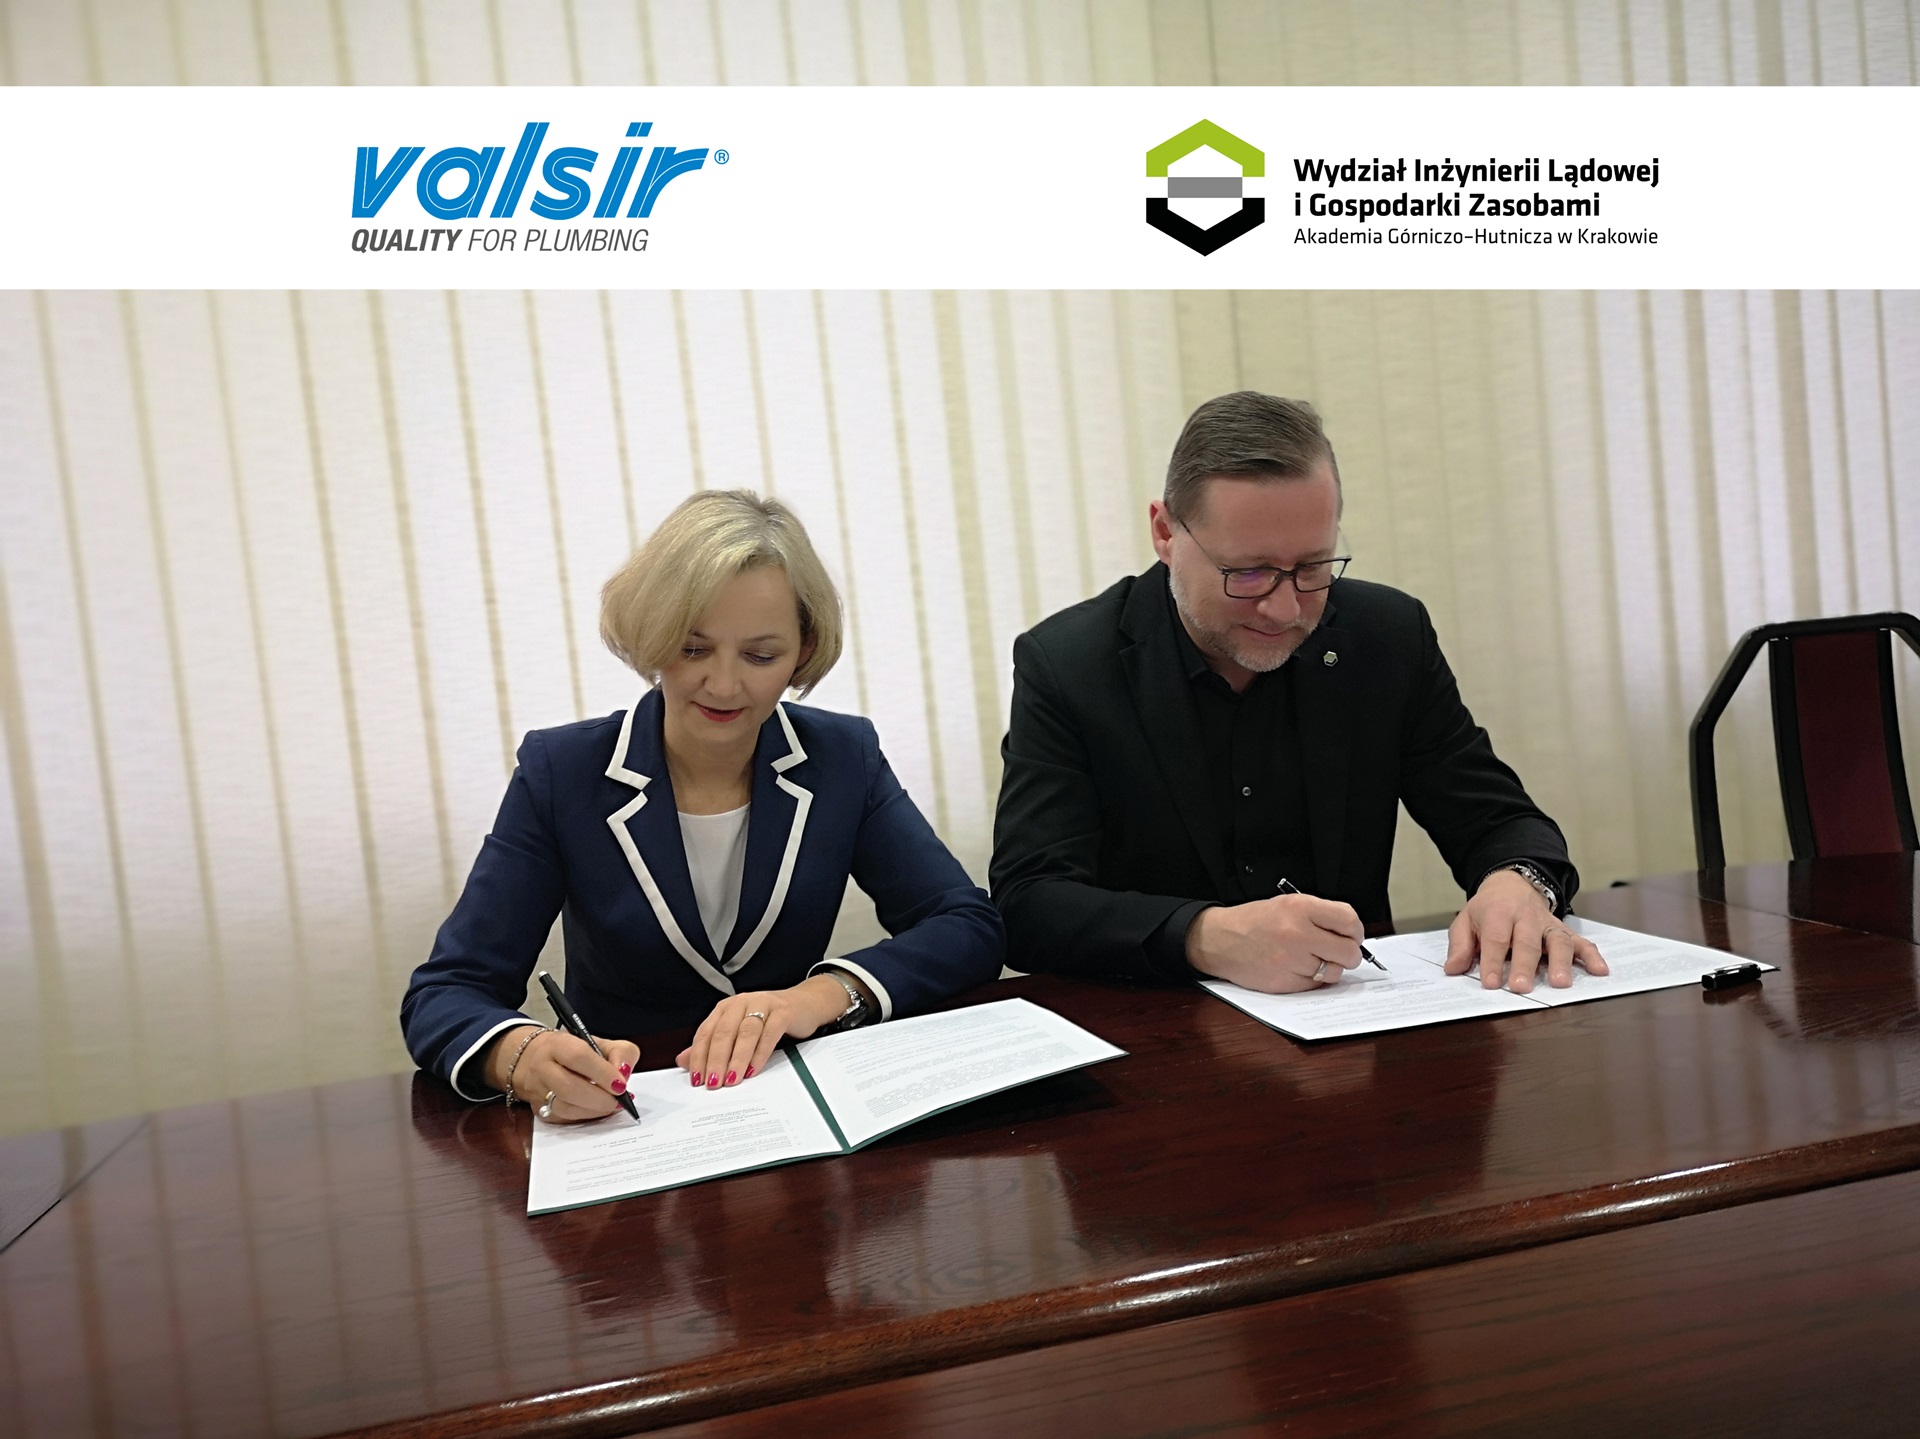 Prezes Valsir Polska Barbara Rosek oraz Dziekana WILiGZ prof. Marka Cały podpisują dokumenty siedząc obok siebie